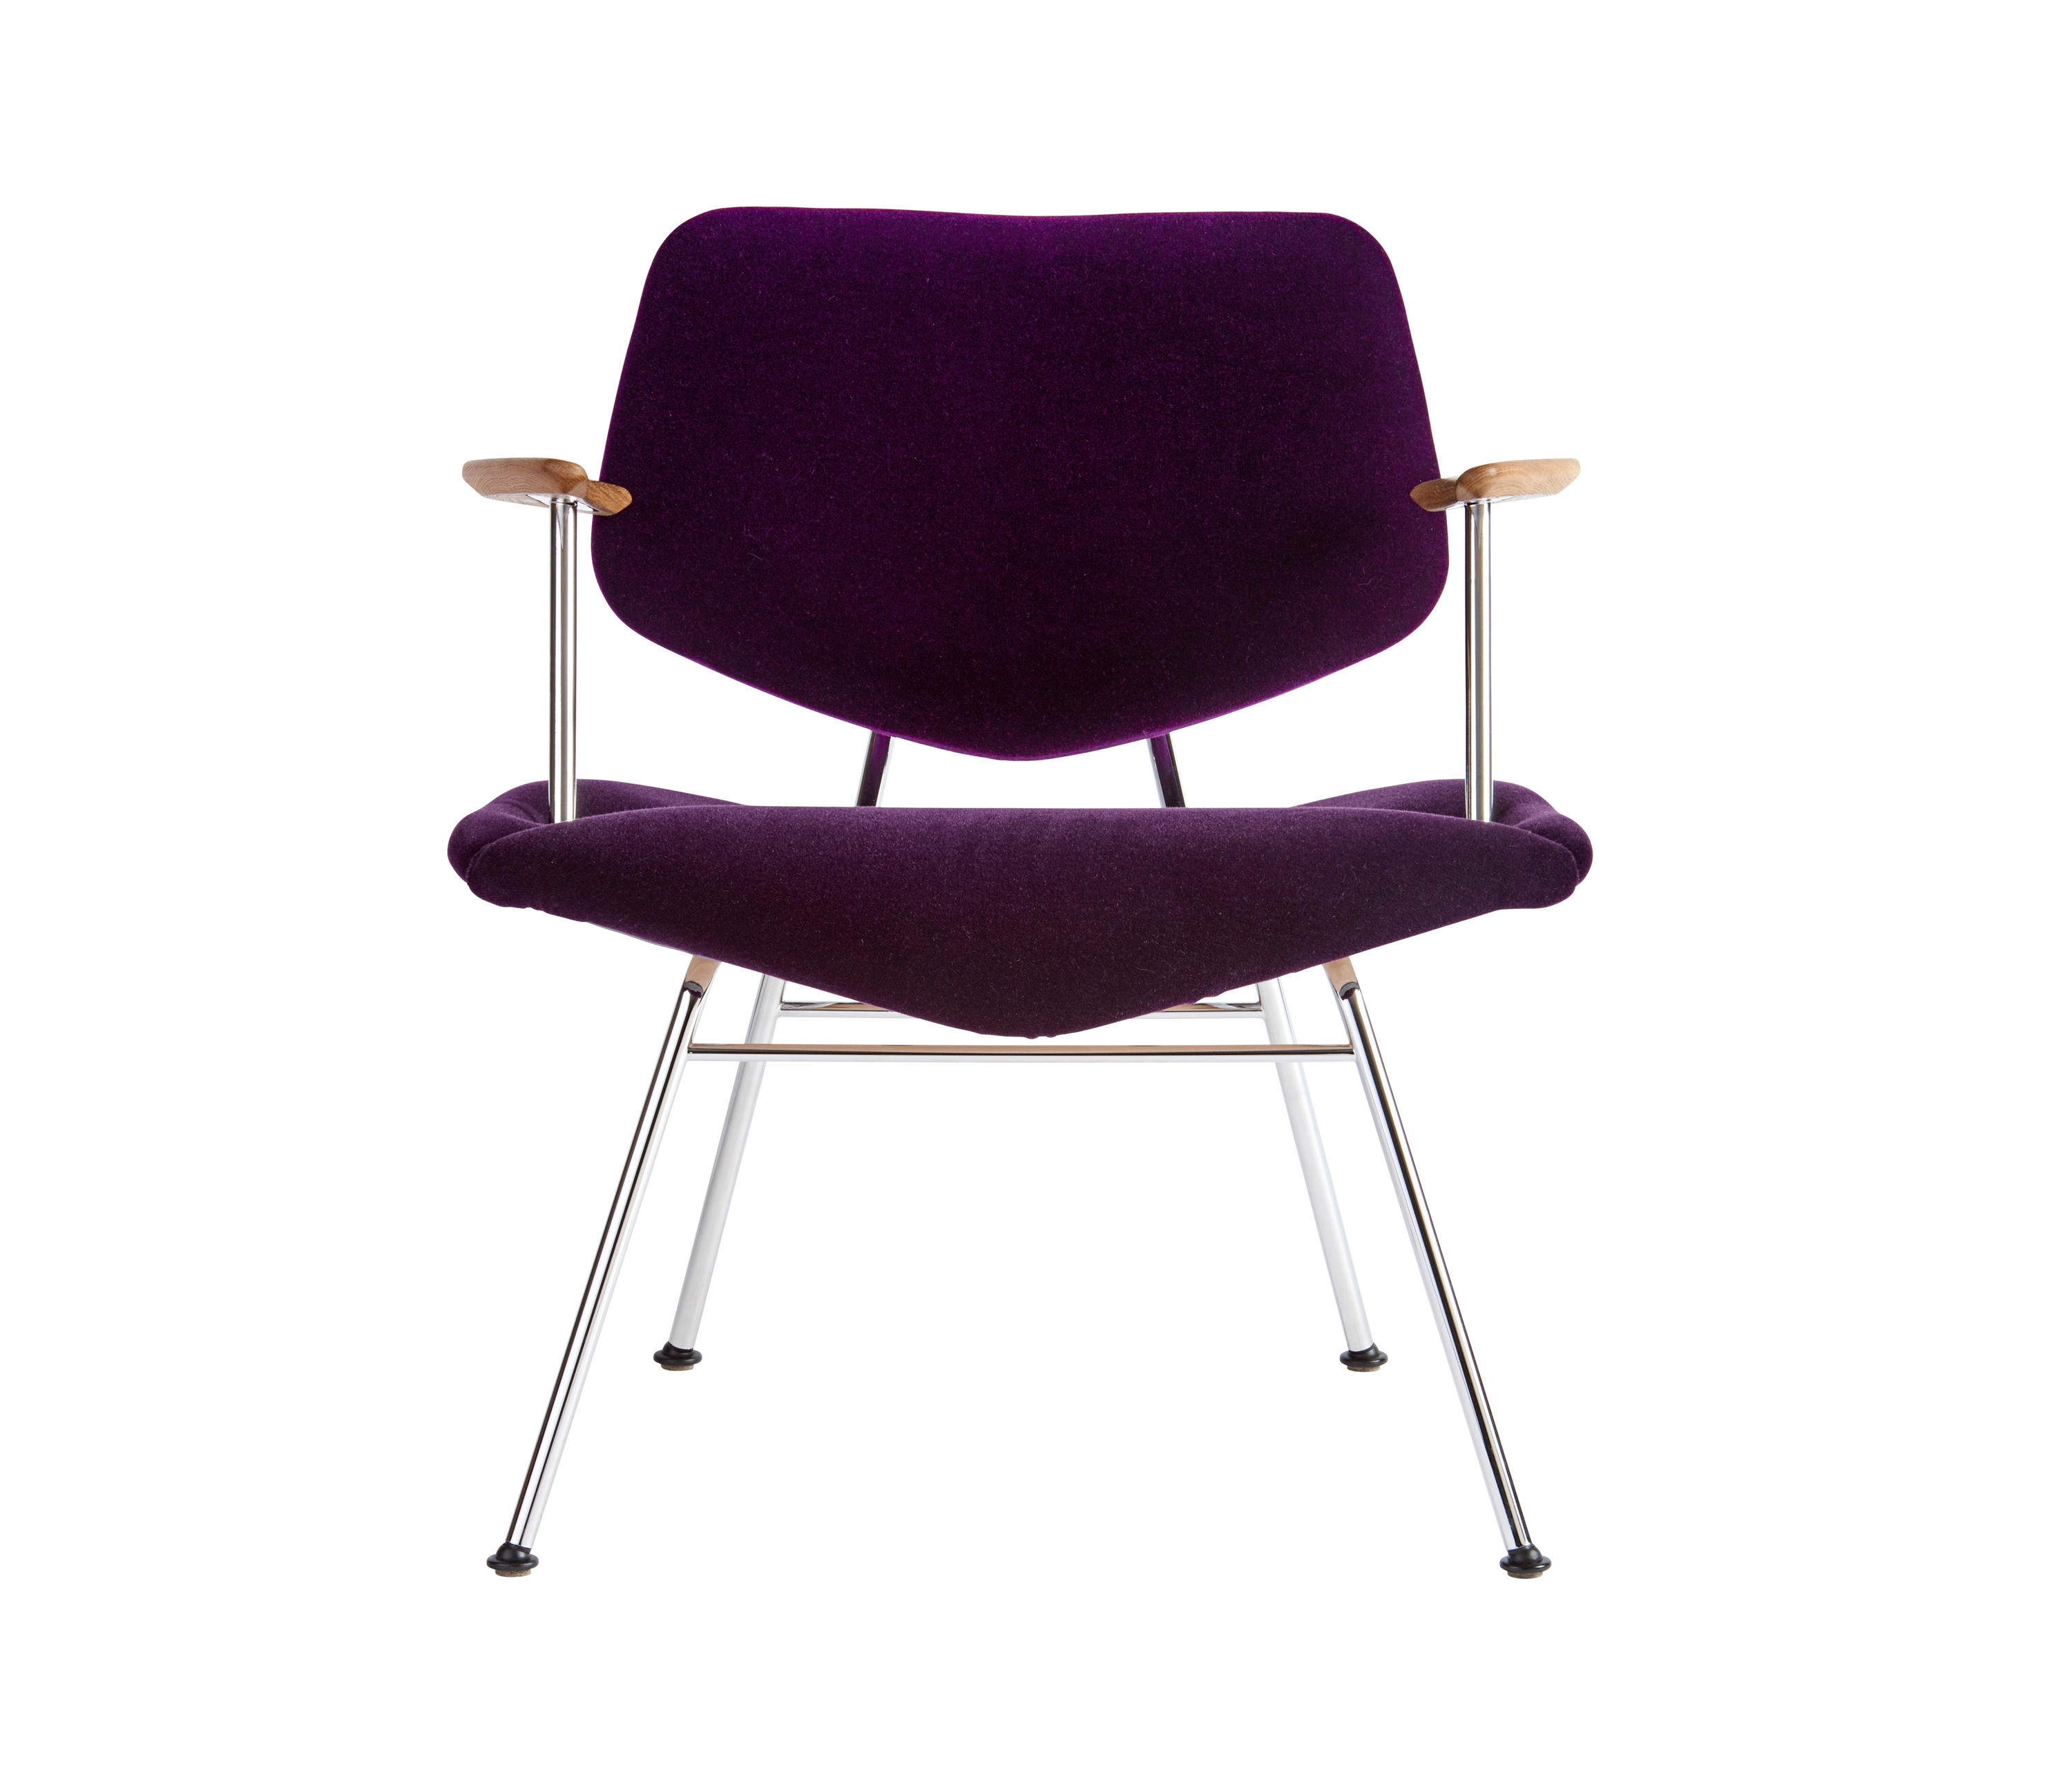 VL135 "Cosy" Chair by Vermund